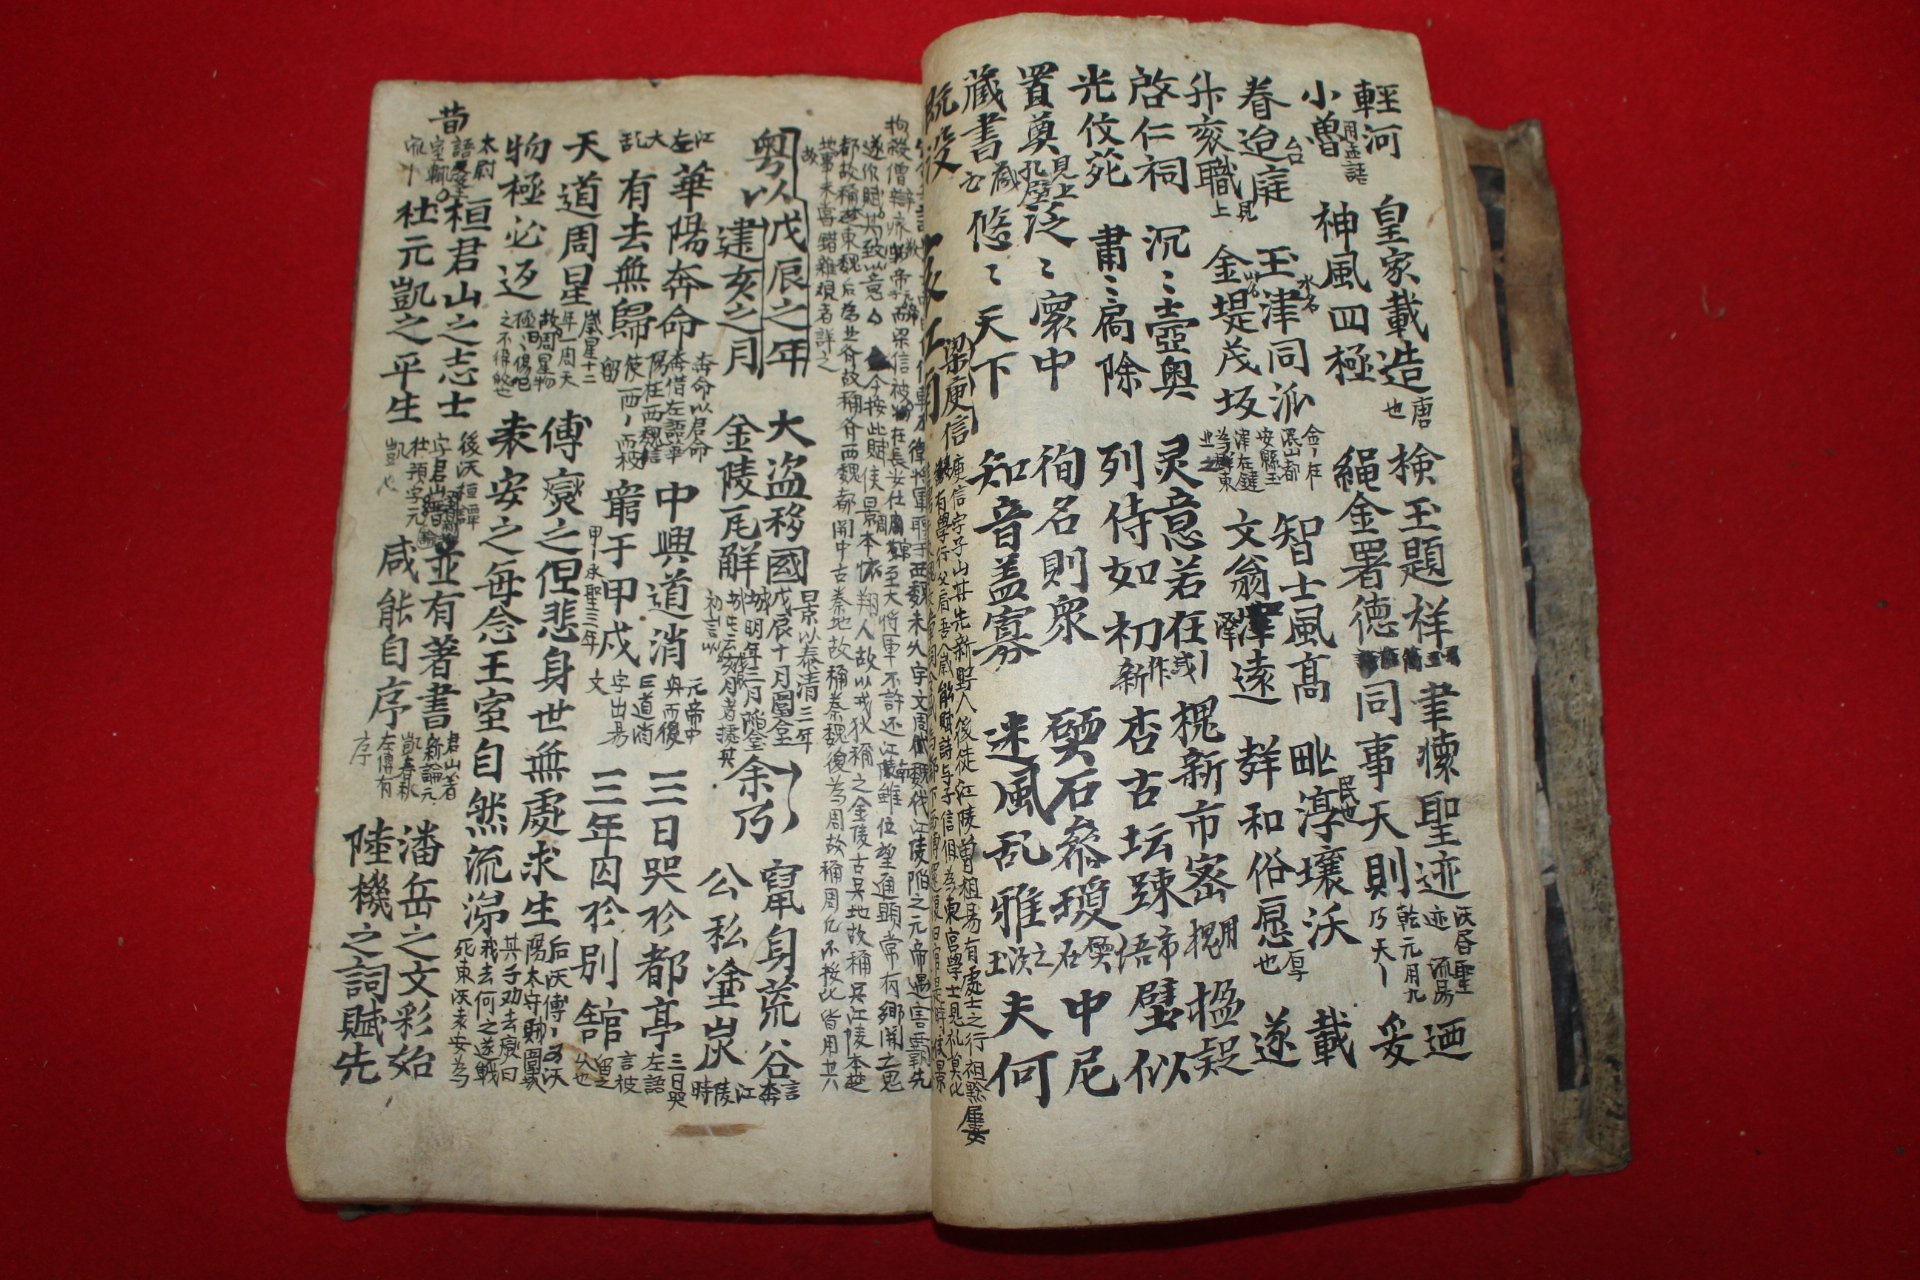 조선시대 필사본 잡노경,애강남등 고부(古賦)